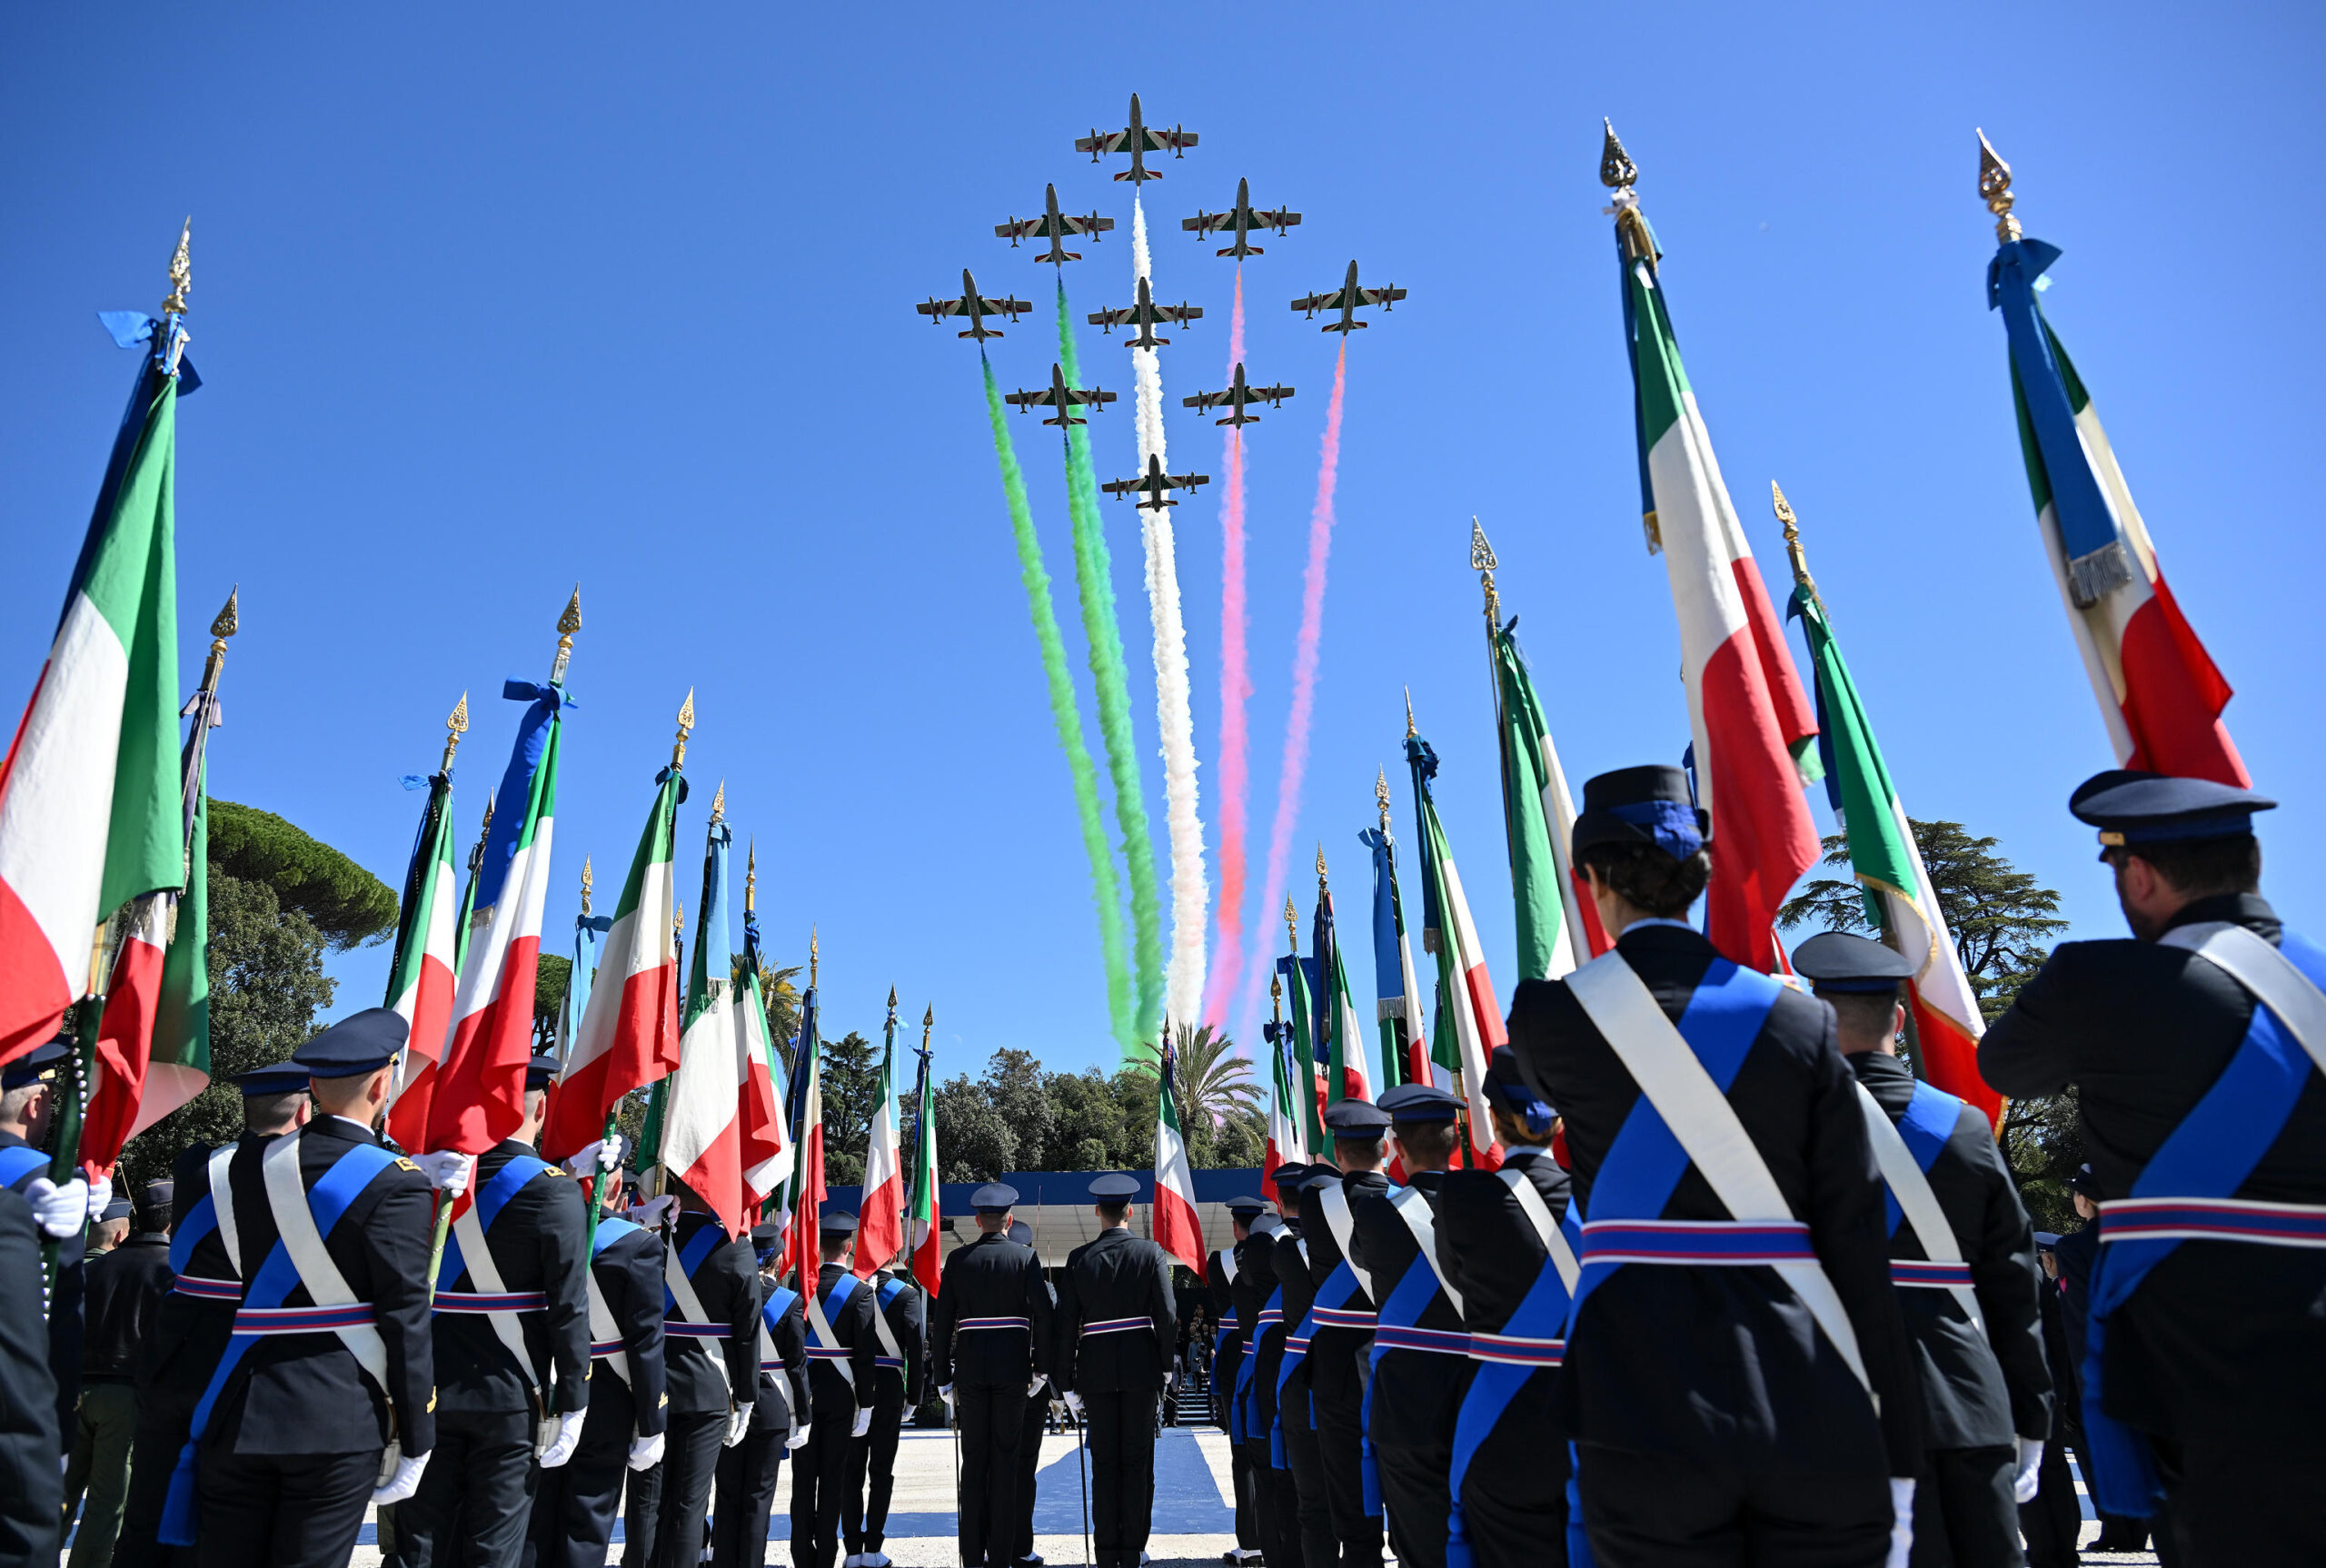 Cento anni dell’Aeronautica Militare, l’evento a Roma alla presenza di Mattarella | VIDEO